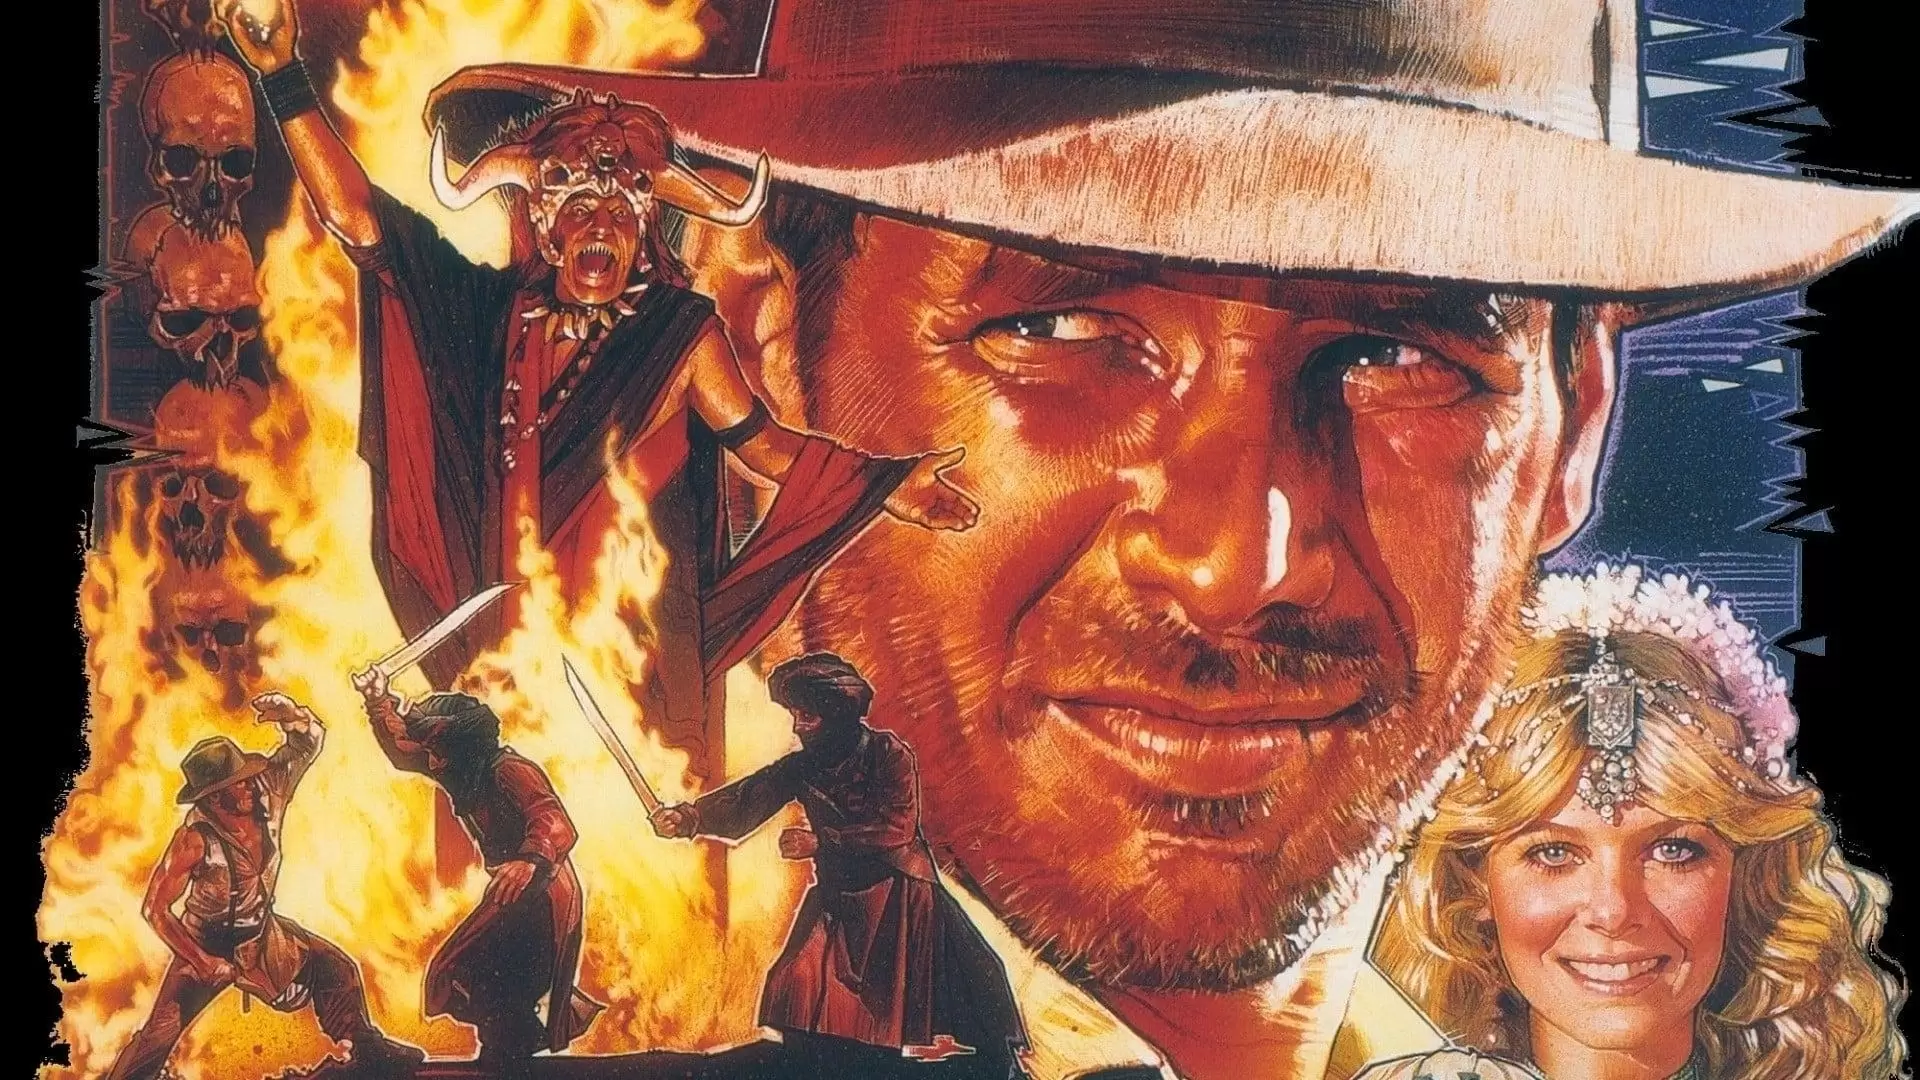 دانلود فیلم Indiana Jones and the Temple of Doom 1984 (ایندیانا جونز و معبد مرگ) با زیرنویس فارسی و تماشای آنلاین